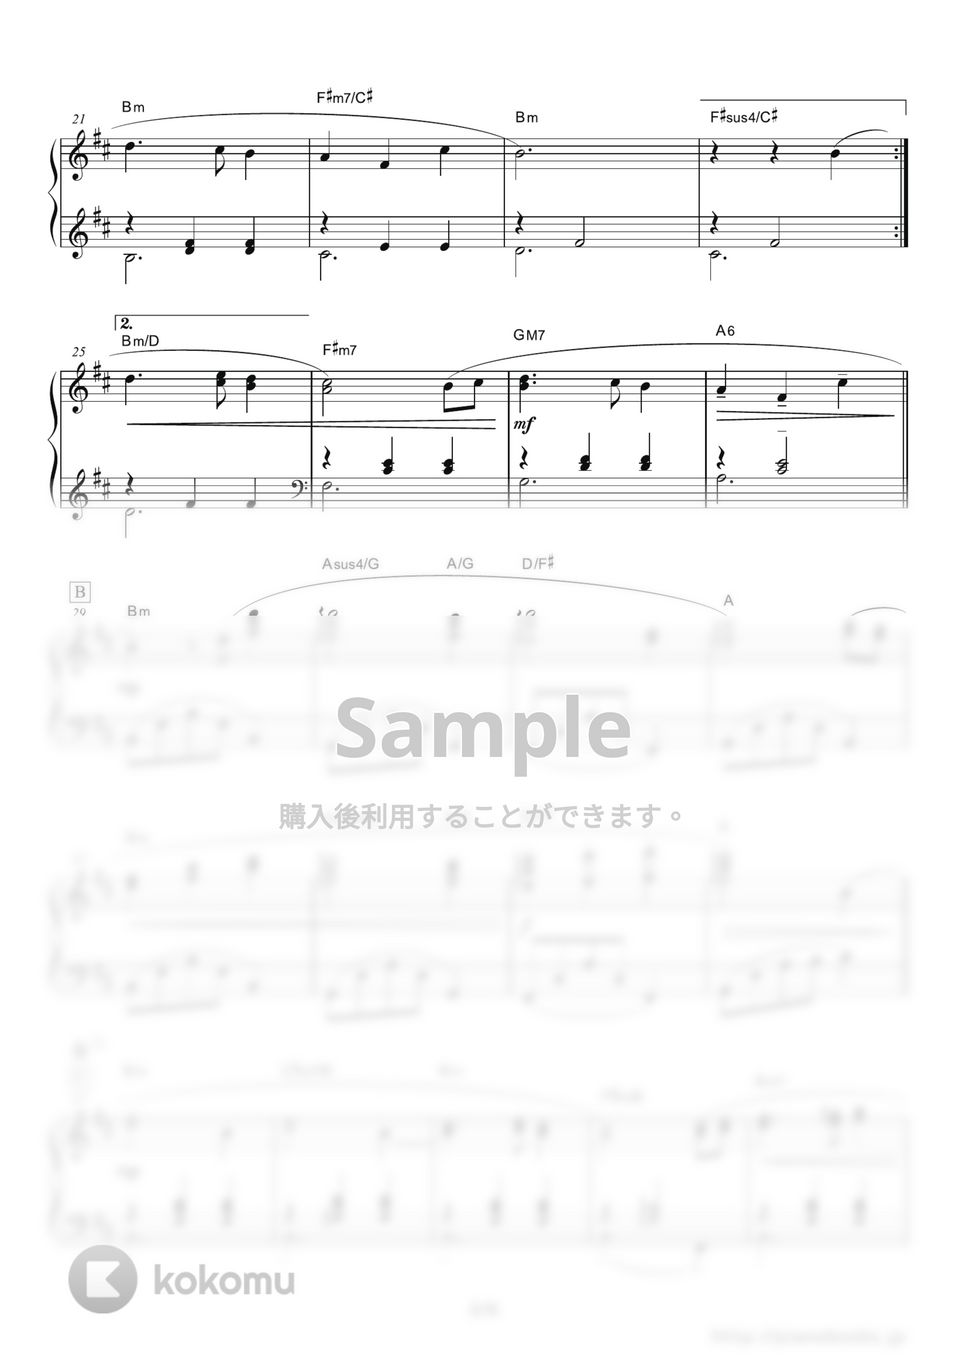 安次嶺希和子 - 忘れじの言の葉 (ゲーム『グリムノーツ』テーマソング) by ピアノの本棚